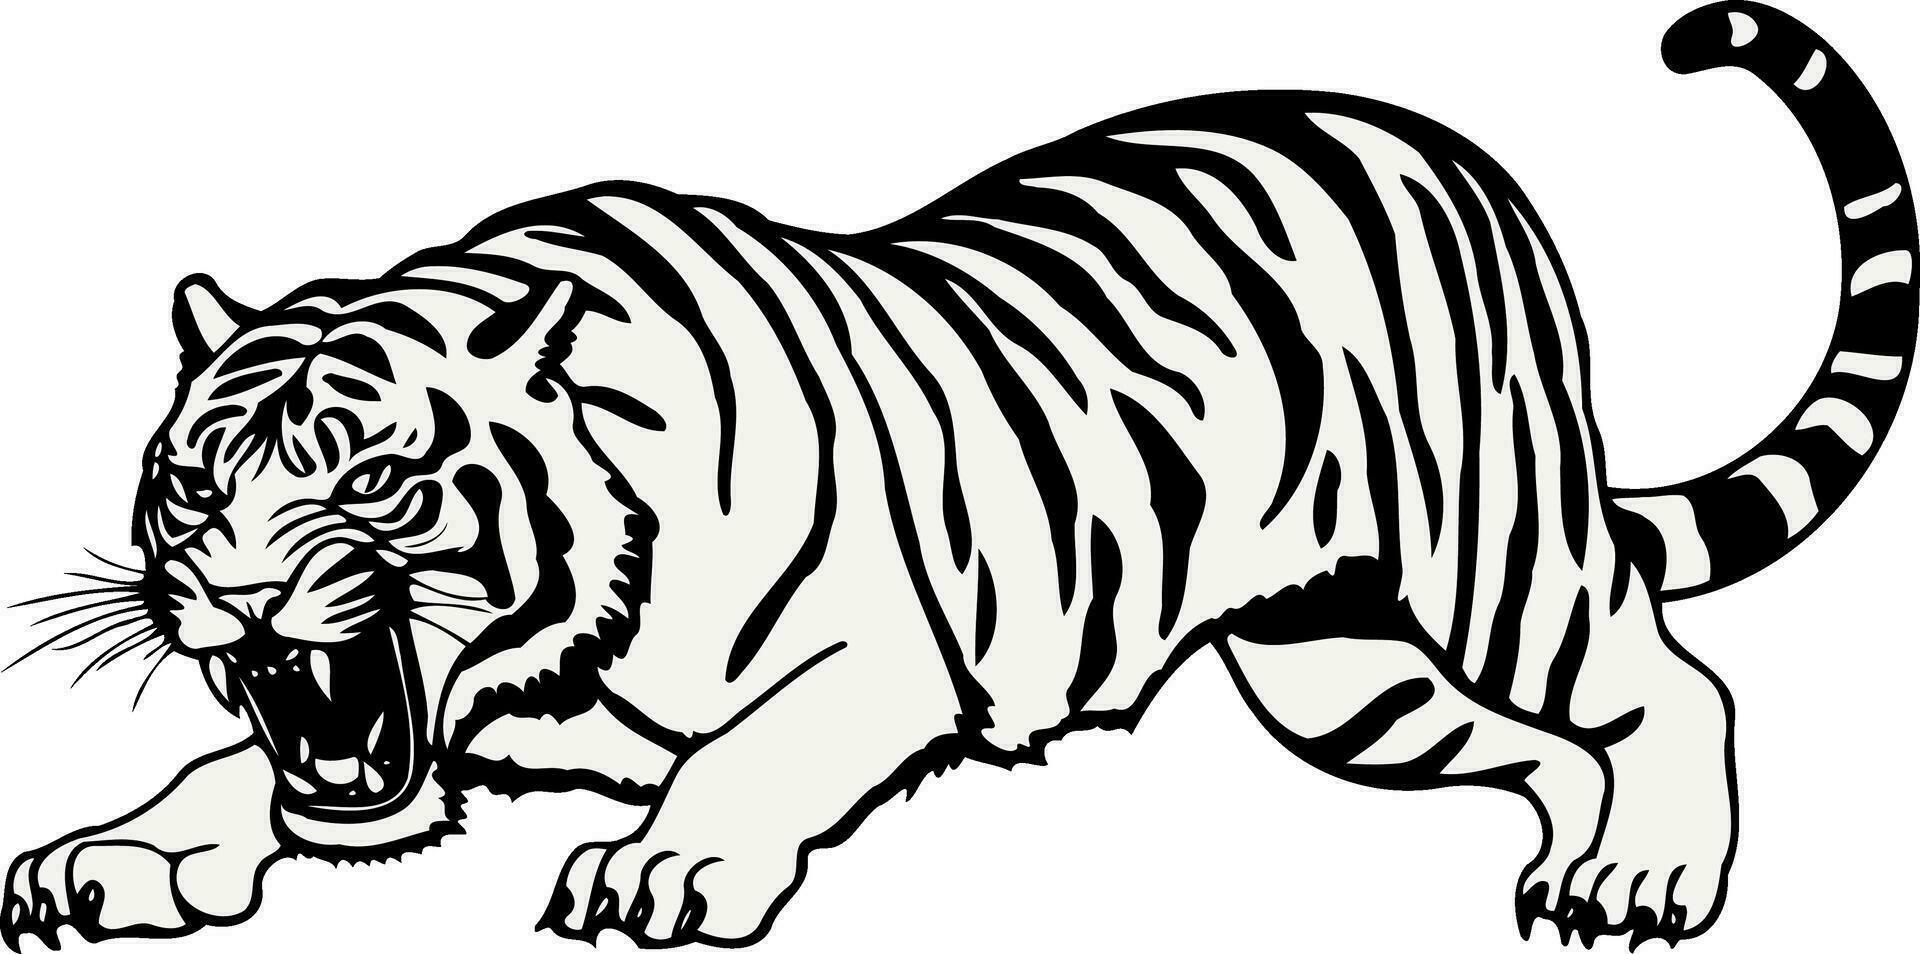 Tier Säugetier katzenartig wütend Tiger im schwarz Weiß vektor